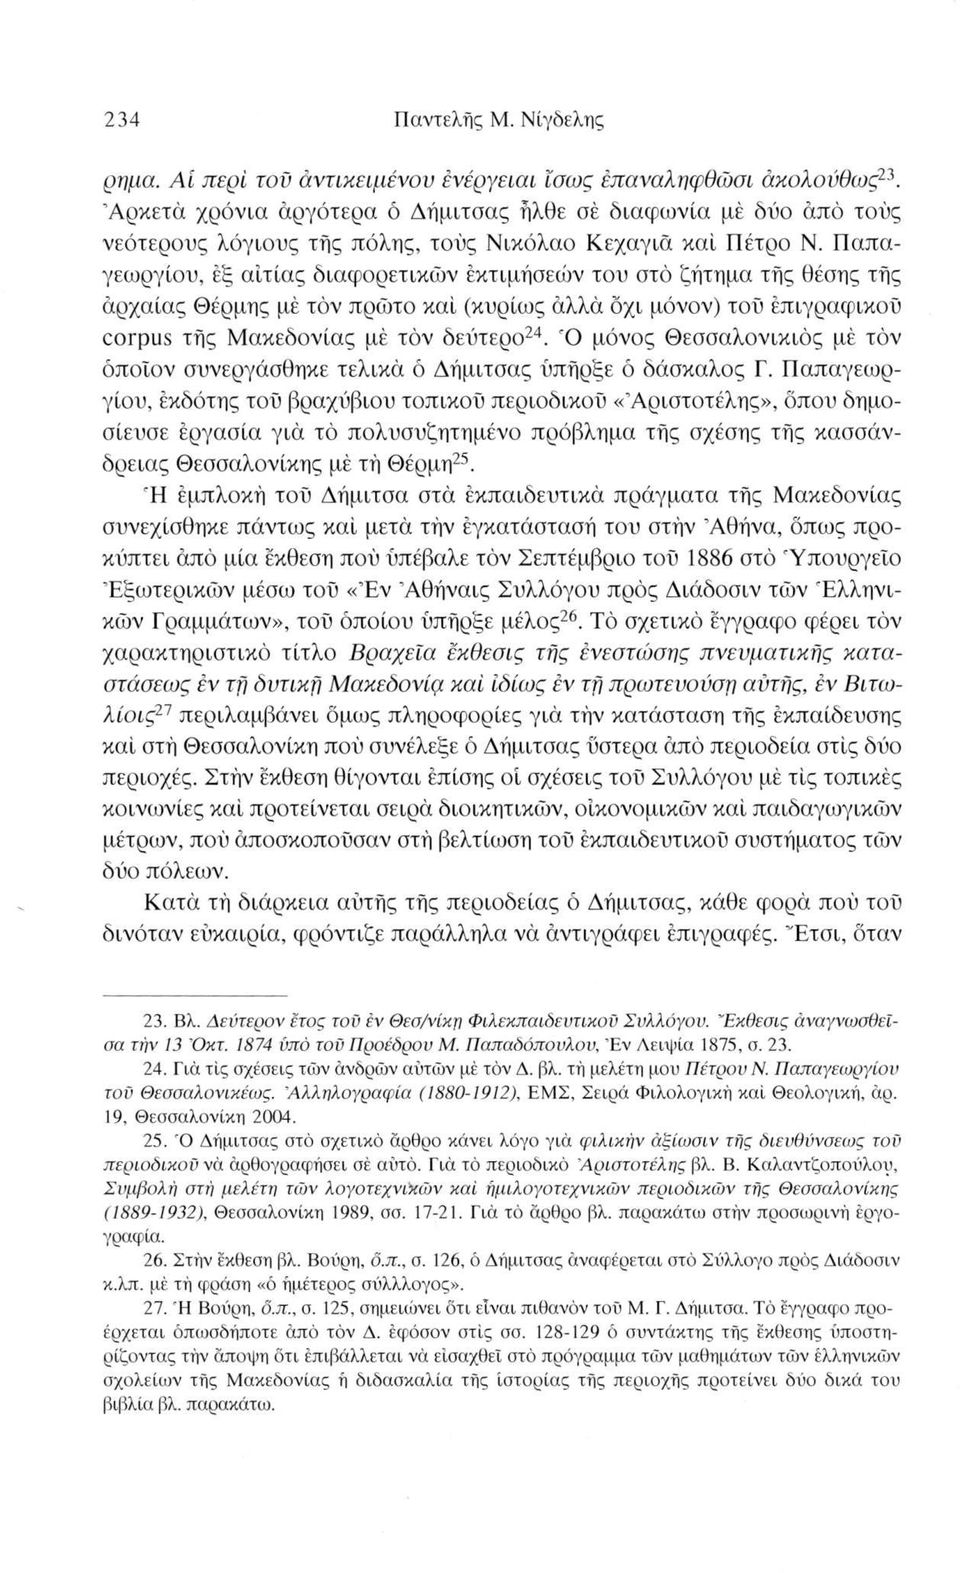 Παπαγεωργίου, εξ αιτίας διαφορετικών έκτιμήσεών του στο ζήτημα τής θέσης τής αρχαίας Θέρμης μέ τόν πρώτο καί (κυρίως άλλα όχι μόνον) τοϋ επιγραφικού corpus τής Μακεδονίας μέ τόν δεύτερο24.